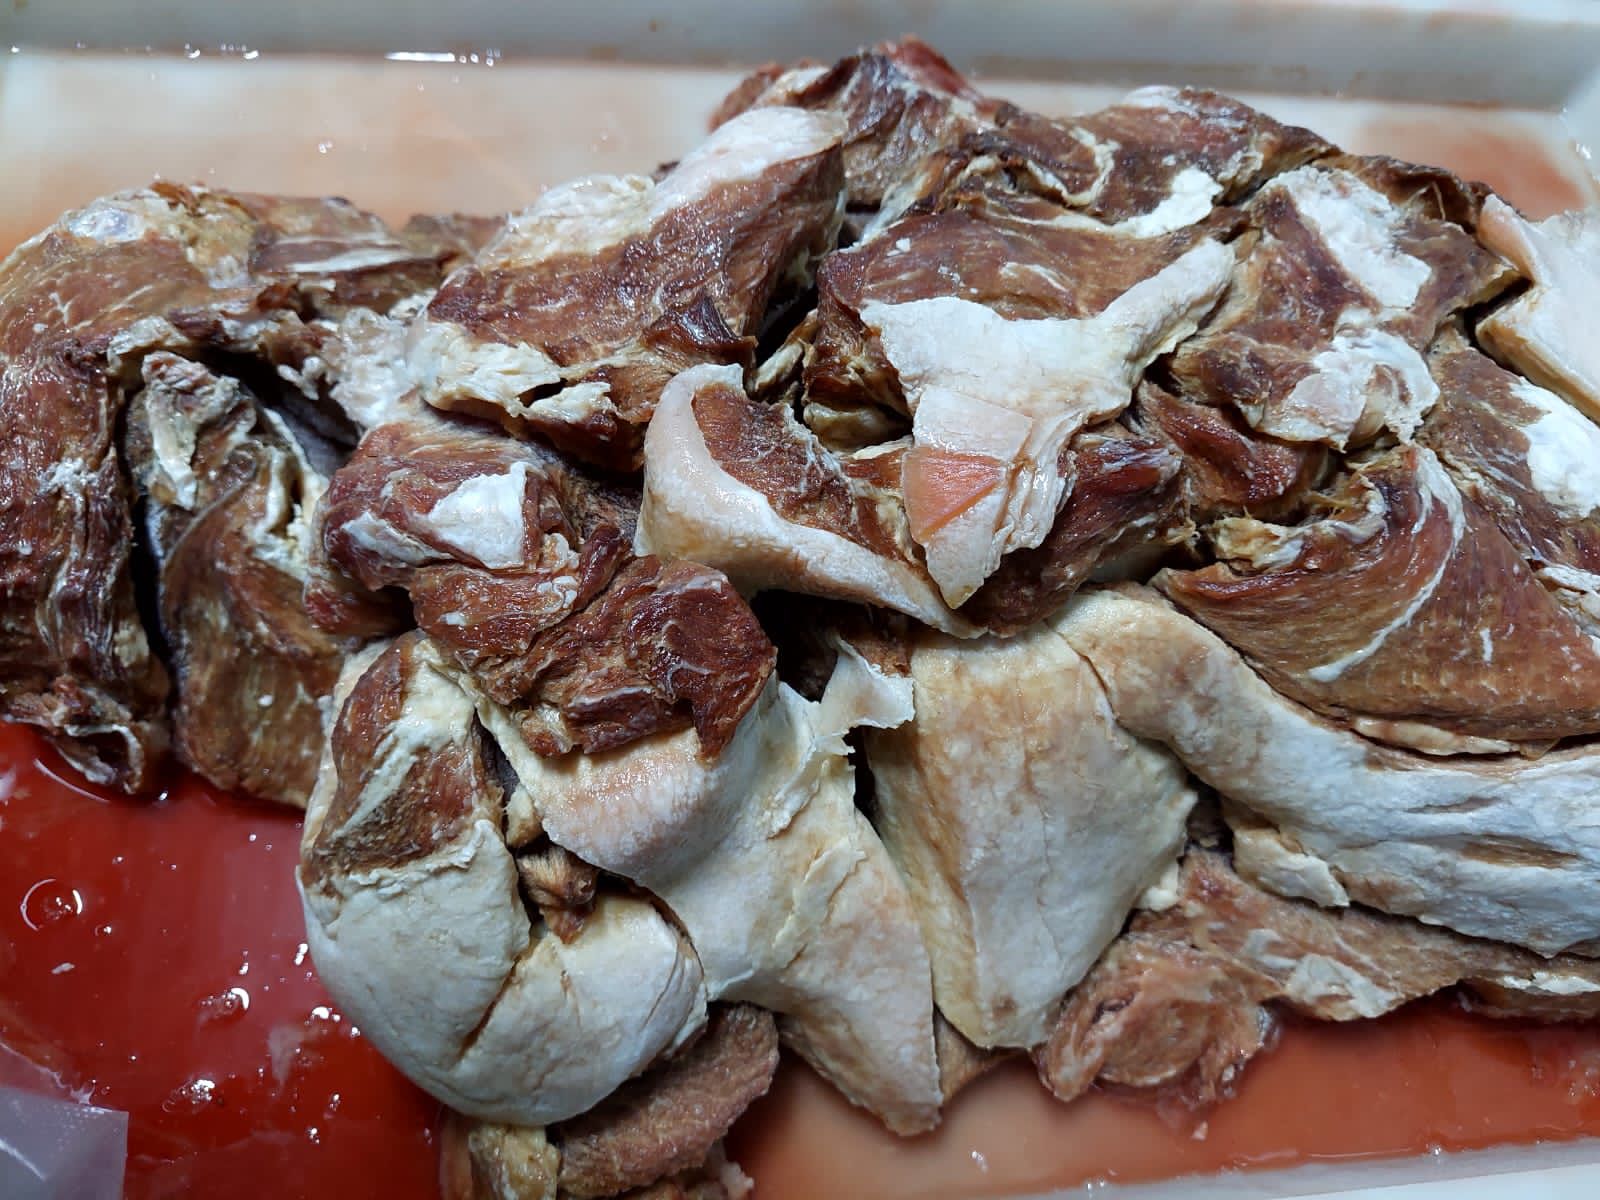 Adaf apreende 1,9 toneladas de carne suína imprópria para o consumo humano